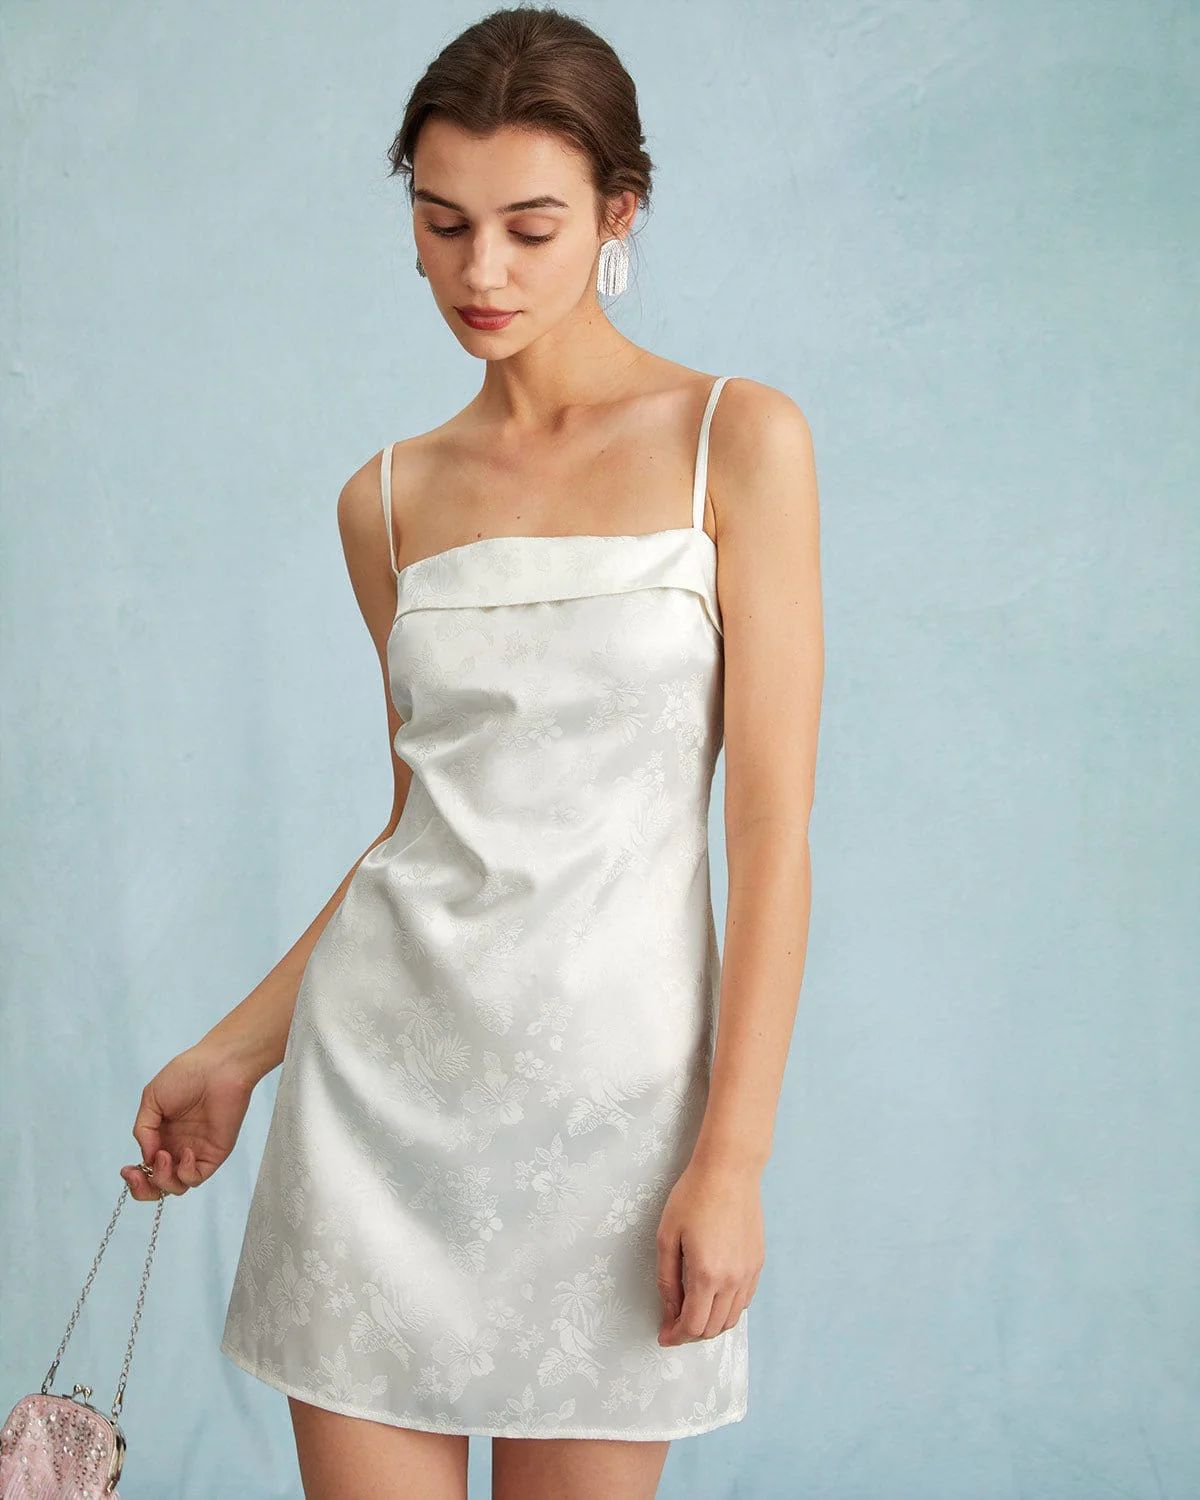 The White Jacquard Sling Mini Dress - White Floral Jacquard Sleeveless Dress - White - Dresses | ... | rihoas.com